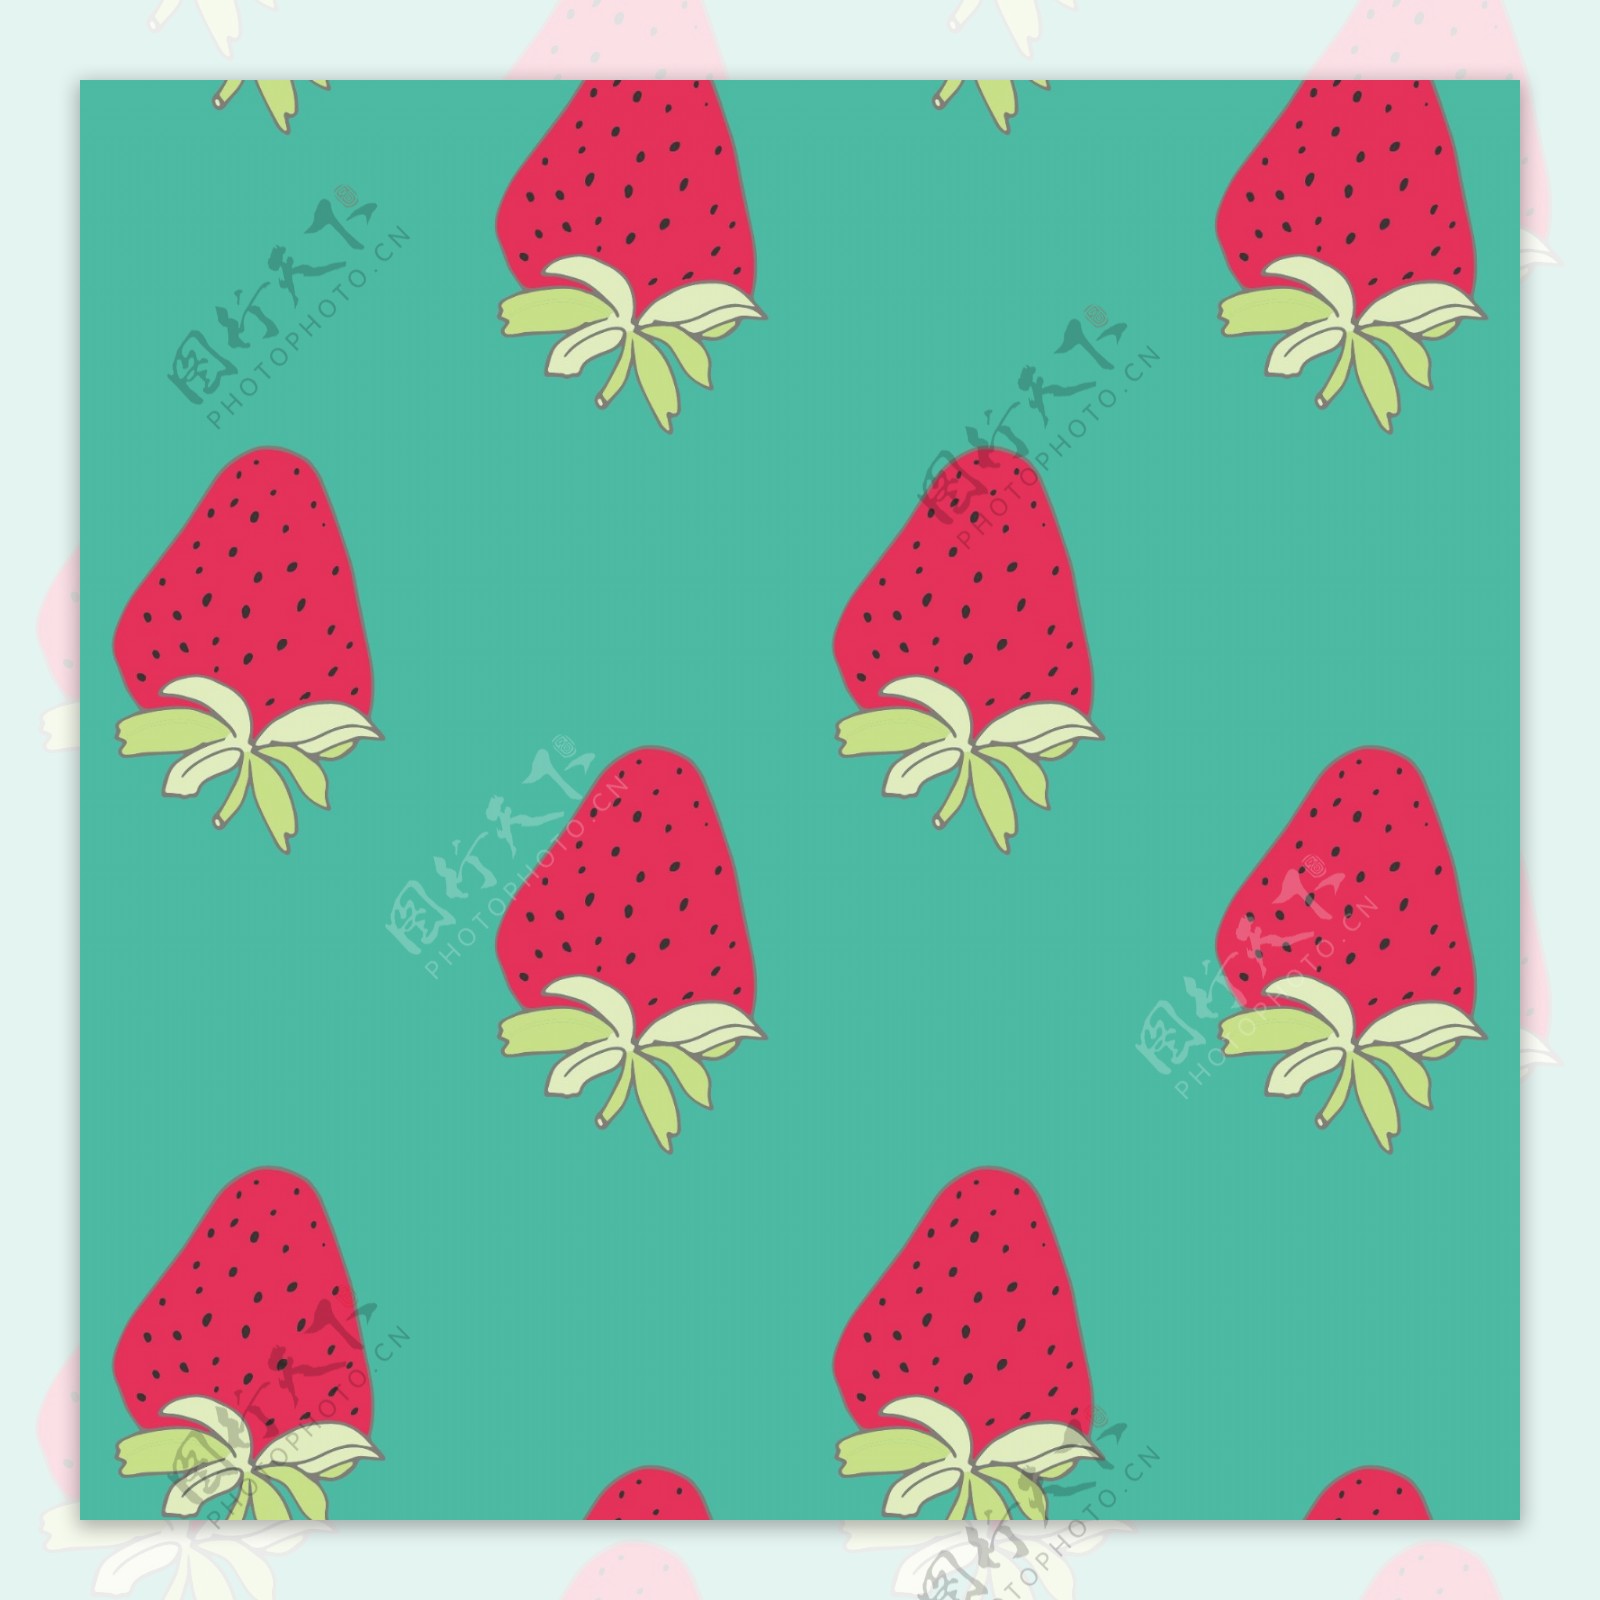 粉红色草莓水果无缝拼接图案矢量背景